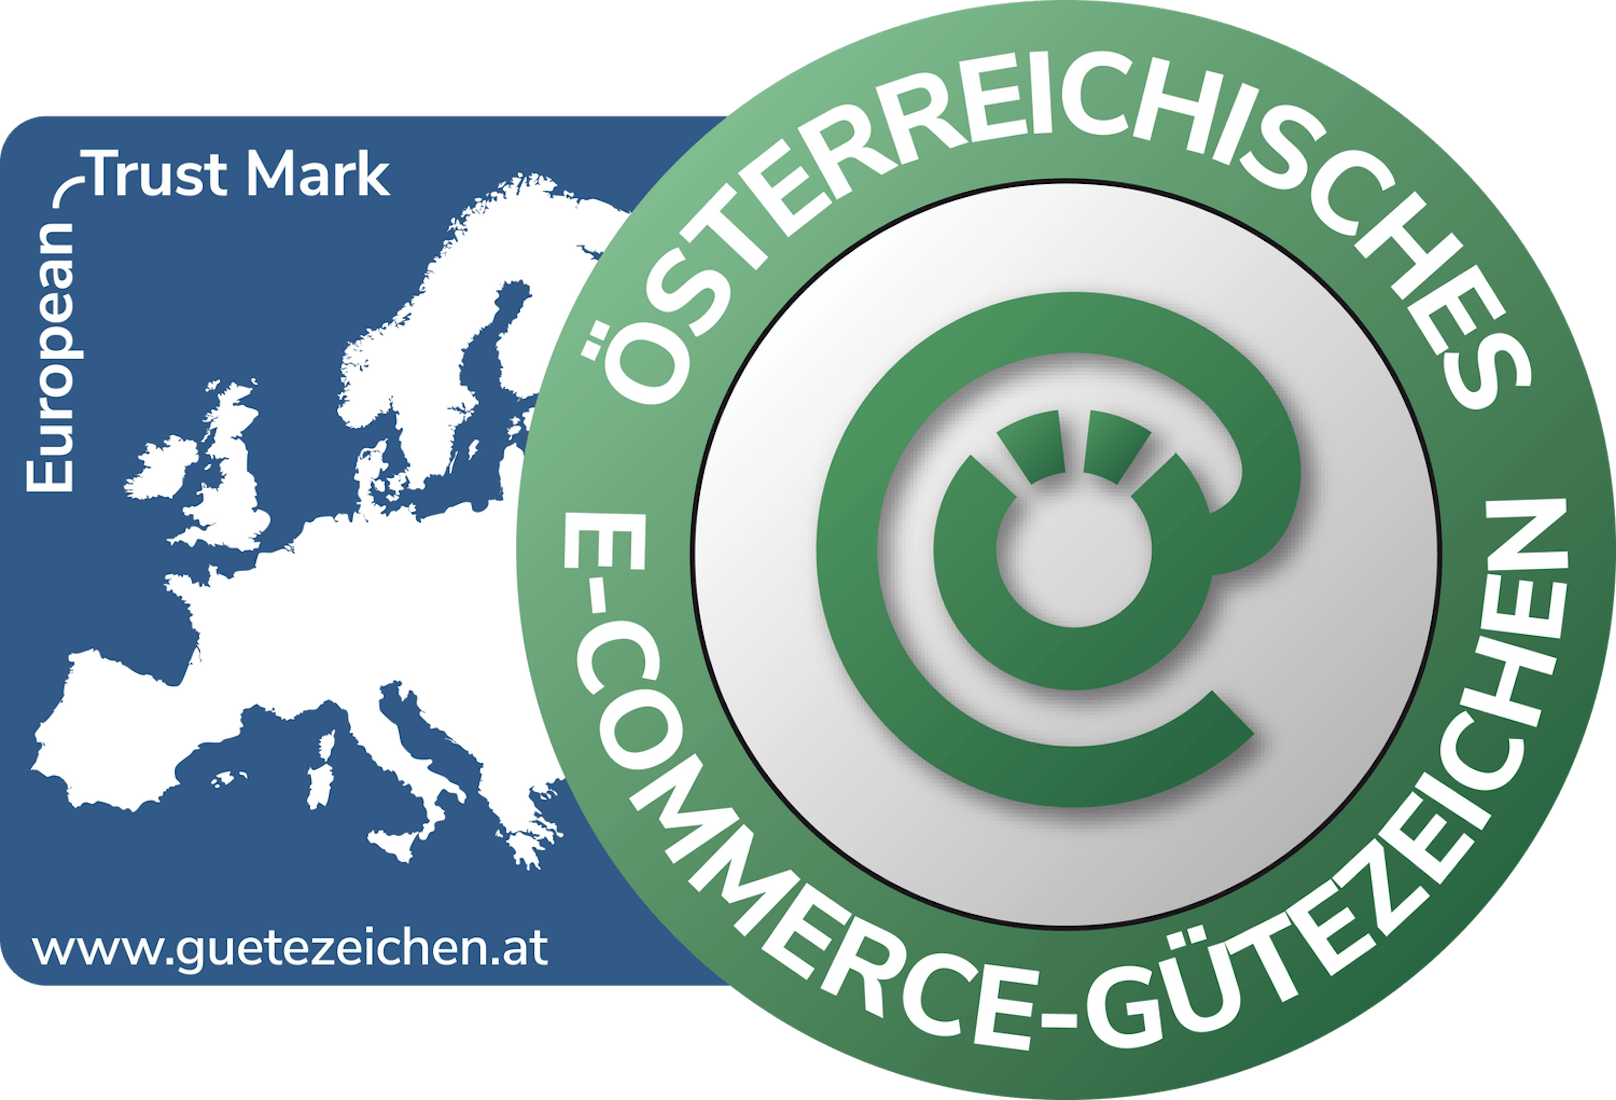 Das Österreichische E-Commerce-Gütezeichen (www.guetezeichen.at) ist das sichtbare Zeichen für seriösen Online-Handel.  